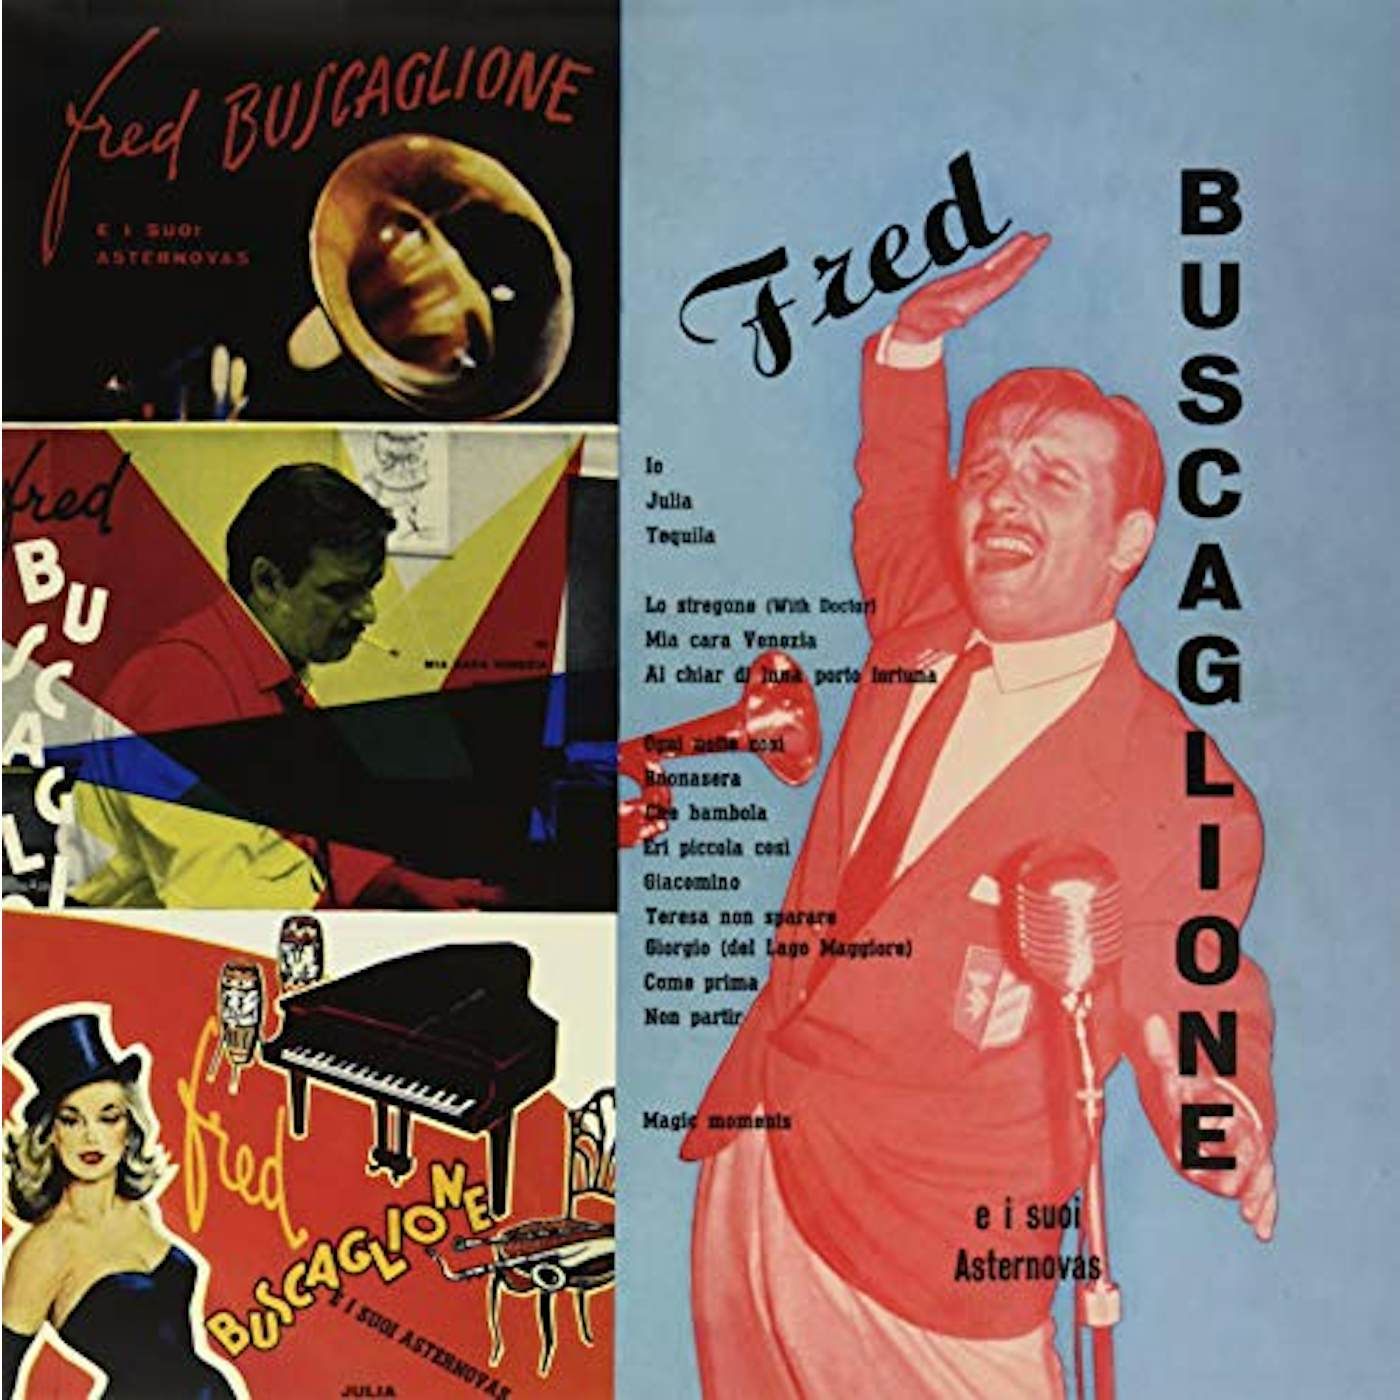 Fred buscaglione Vinyl Record